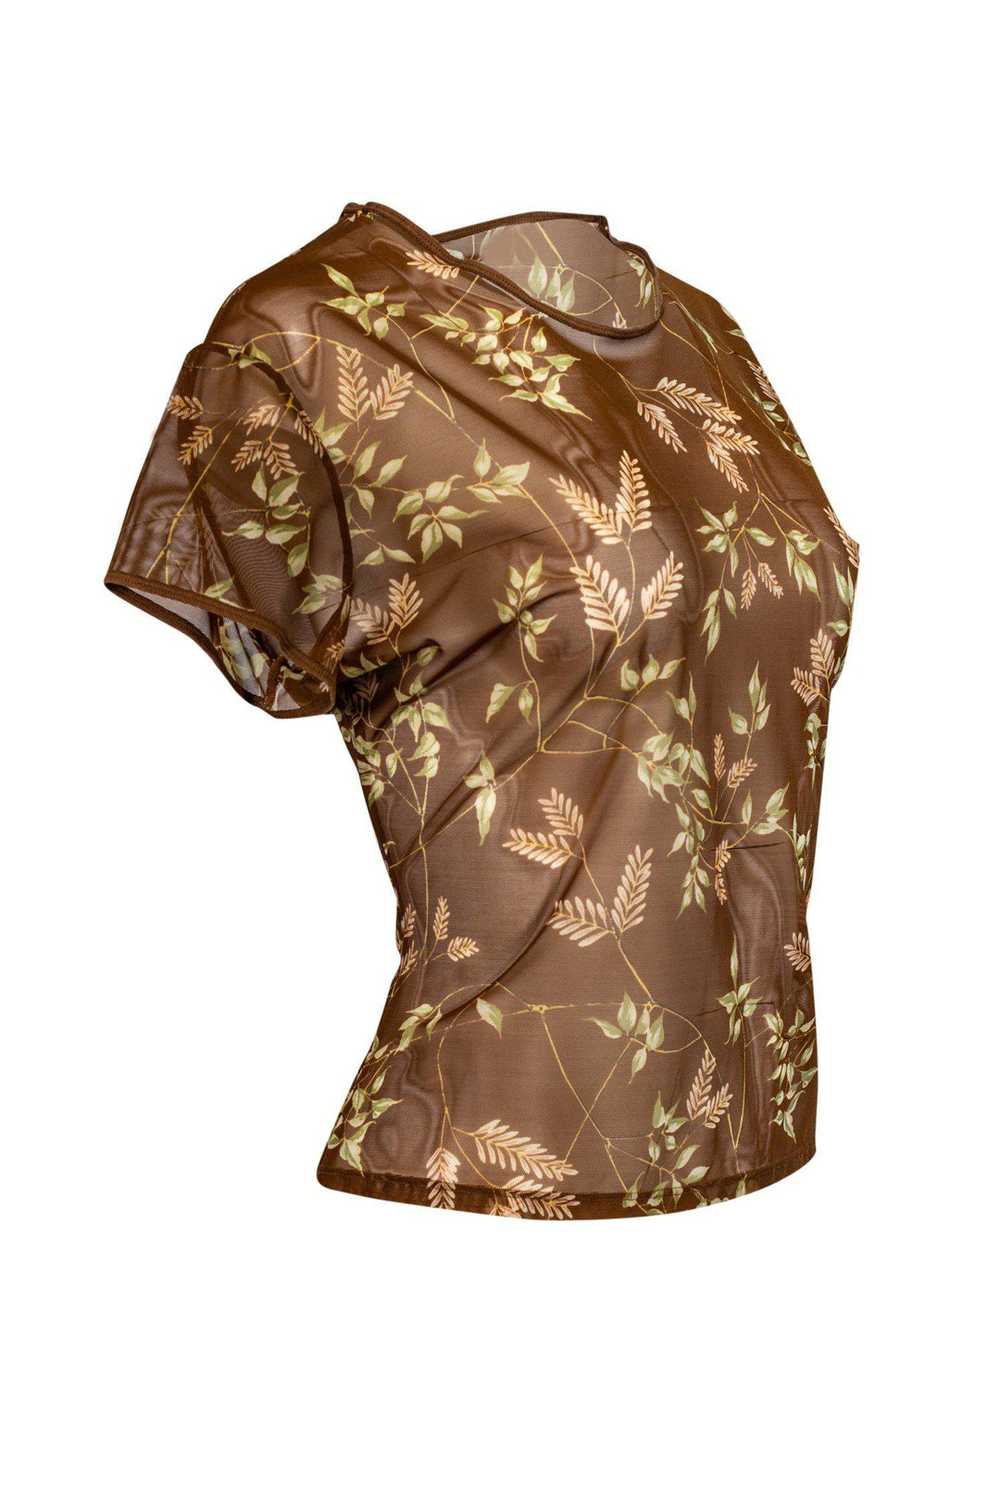 Ralph Lauren - Semi Sheer Brown Leaf Top Sz L - image 2